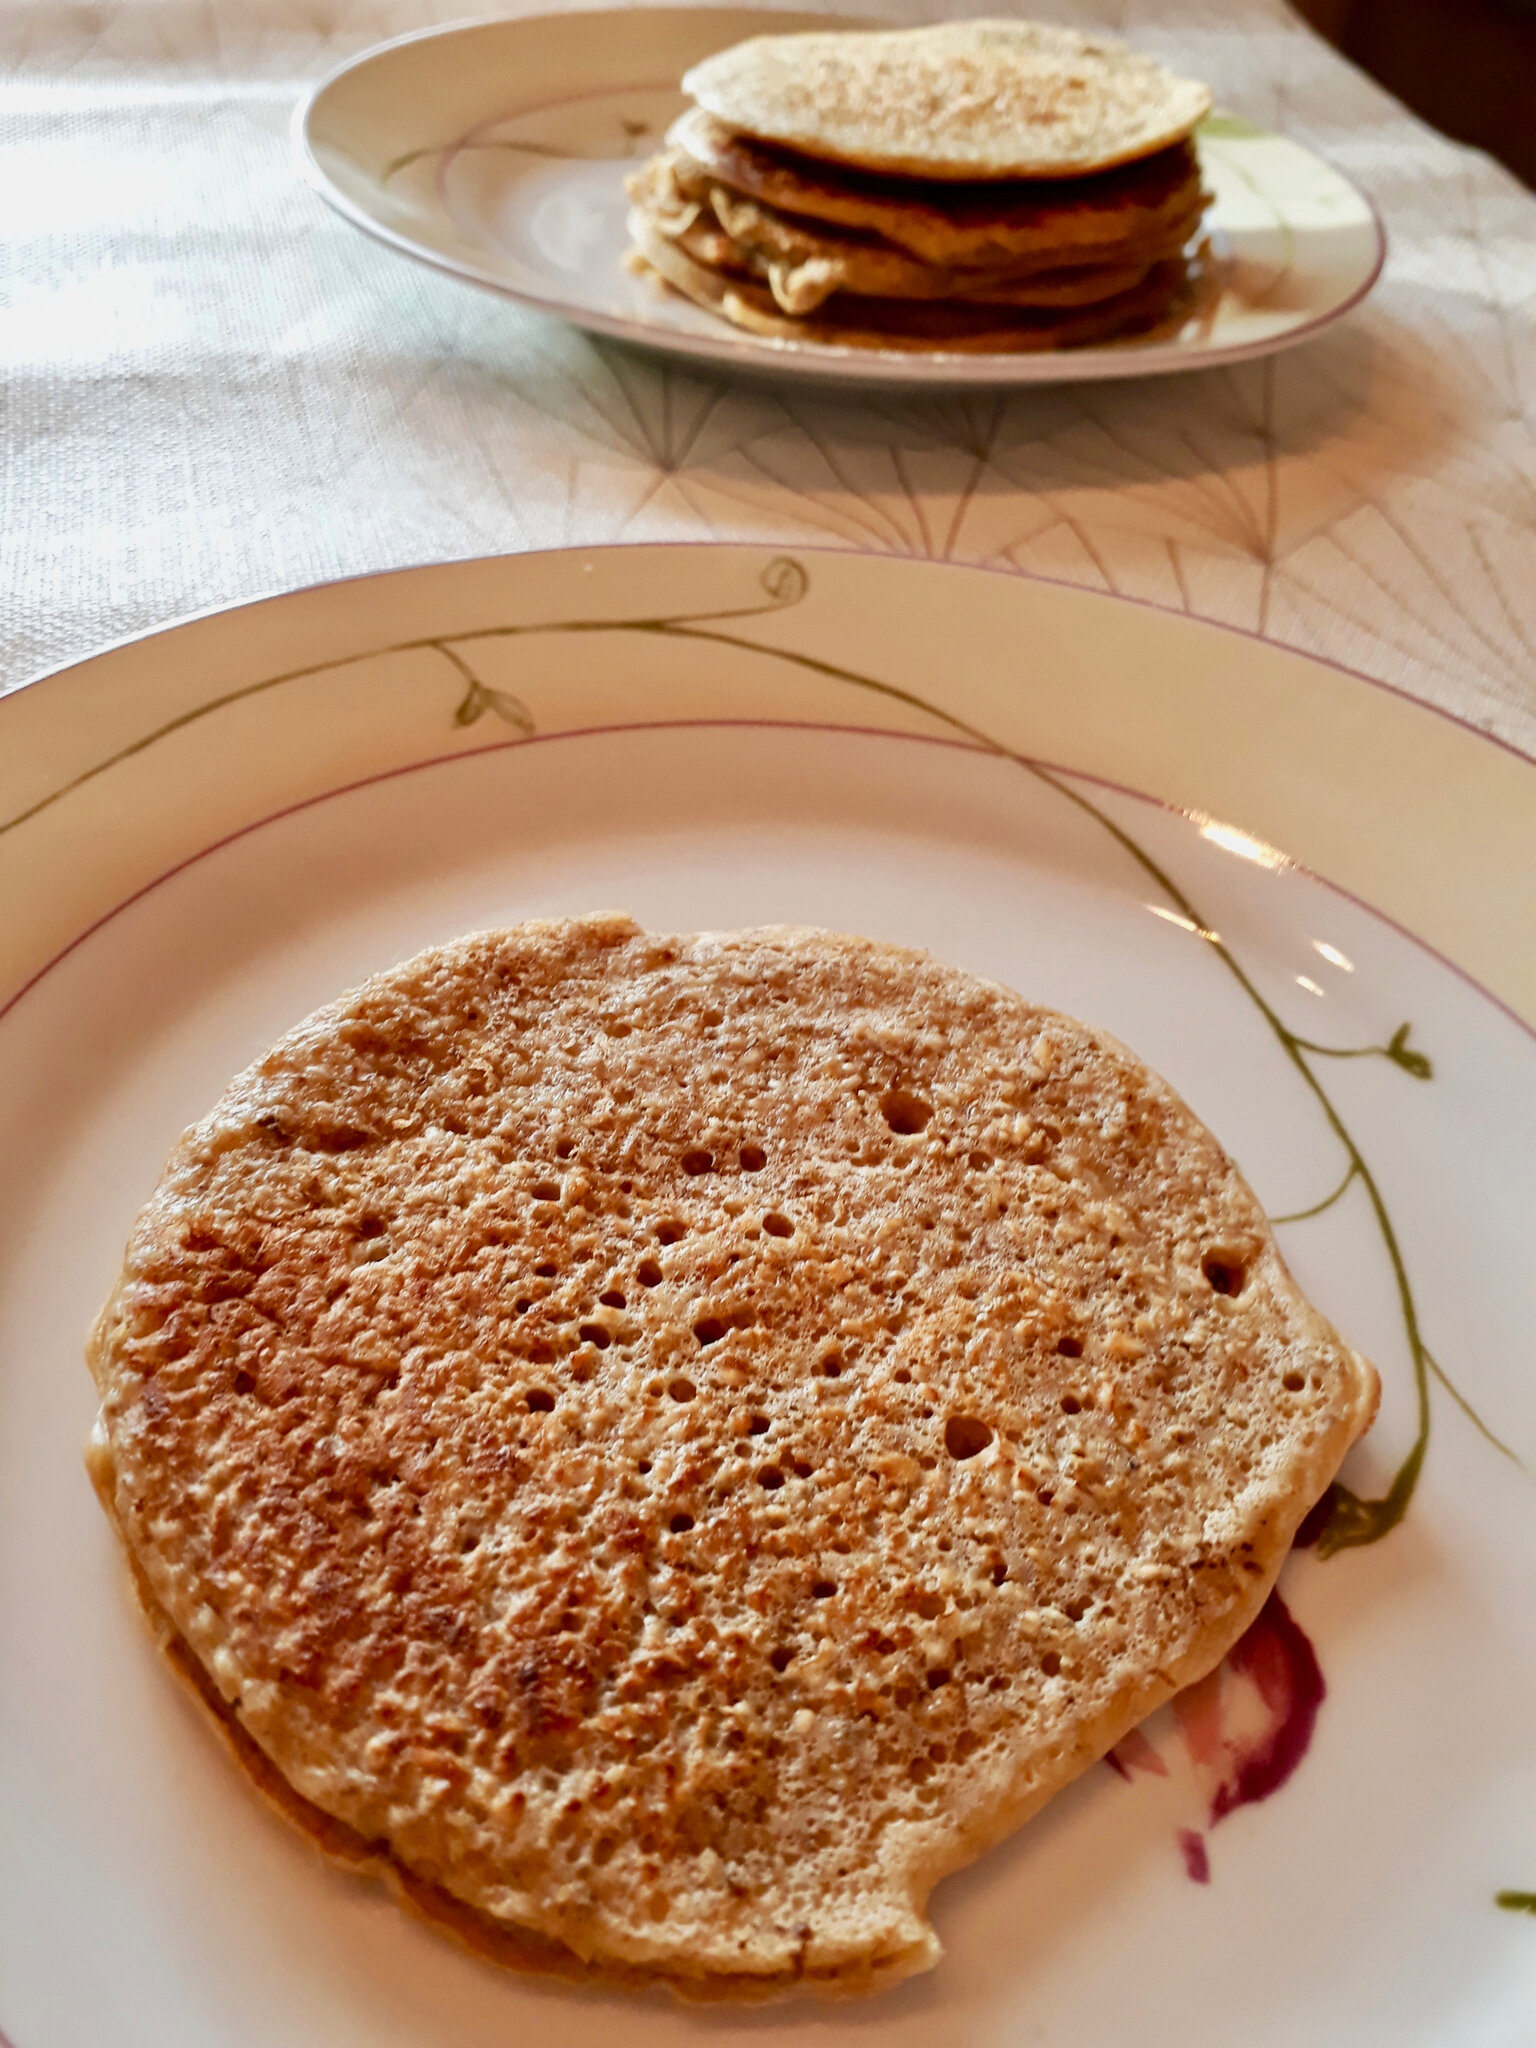 Pancakes IG BAS à la farine d'orge mondé – Megalow Food